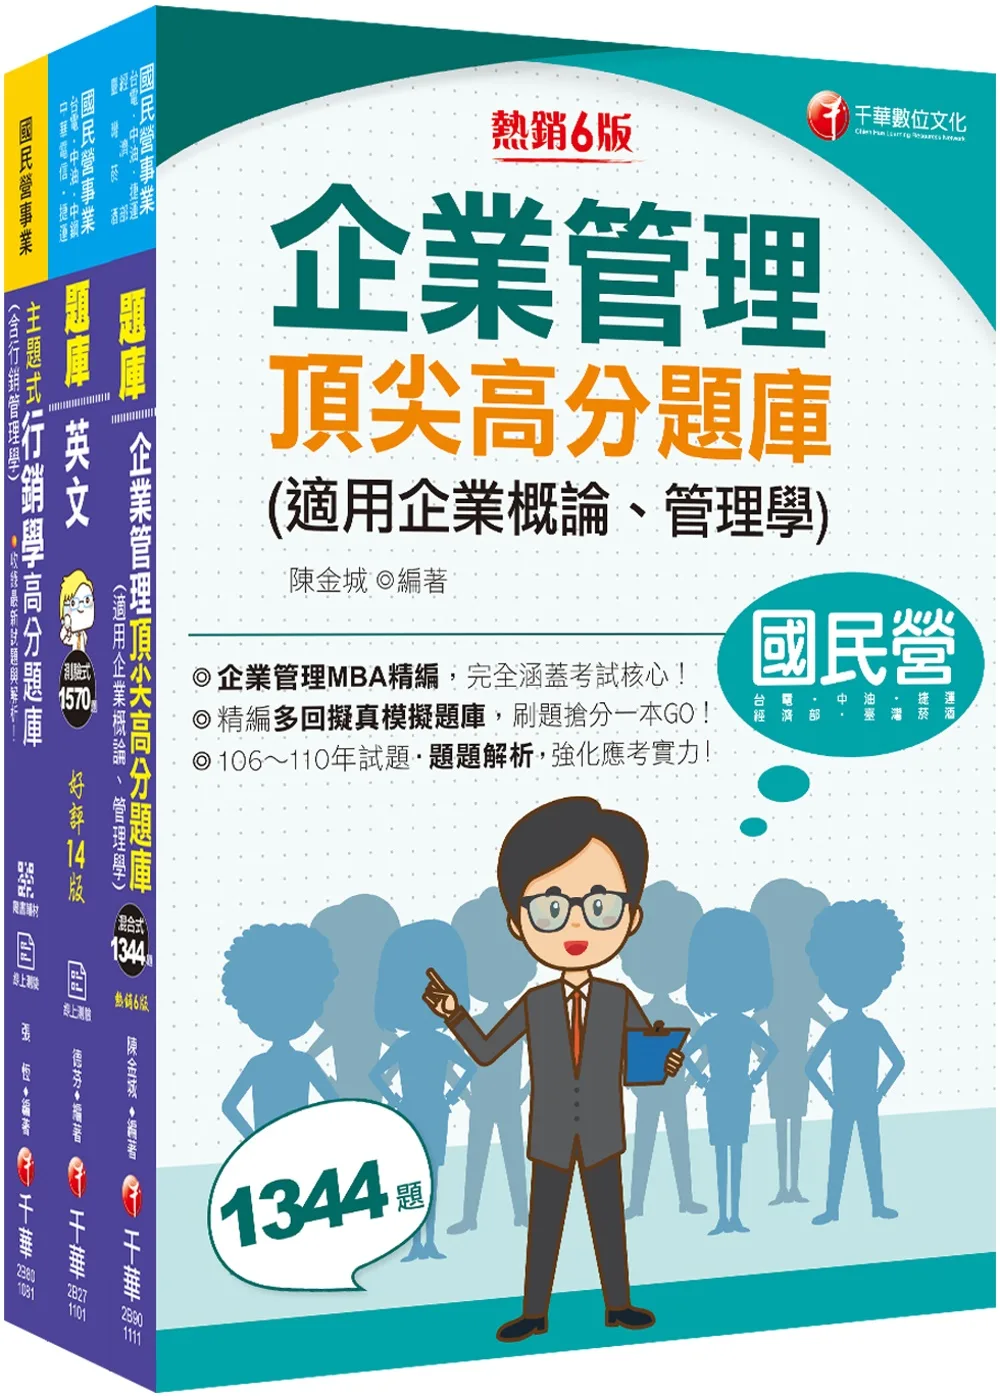 2022[業務類-行銷業務推廣專業職(四)管理師]中華電信從業人員(基層專員)遴選題庫版套書：市面上內容最完整解題套書，綜觀命題趨勢！